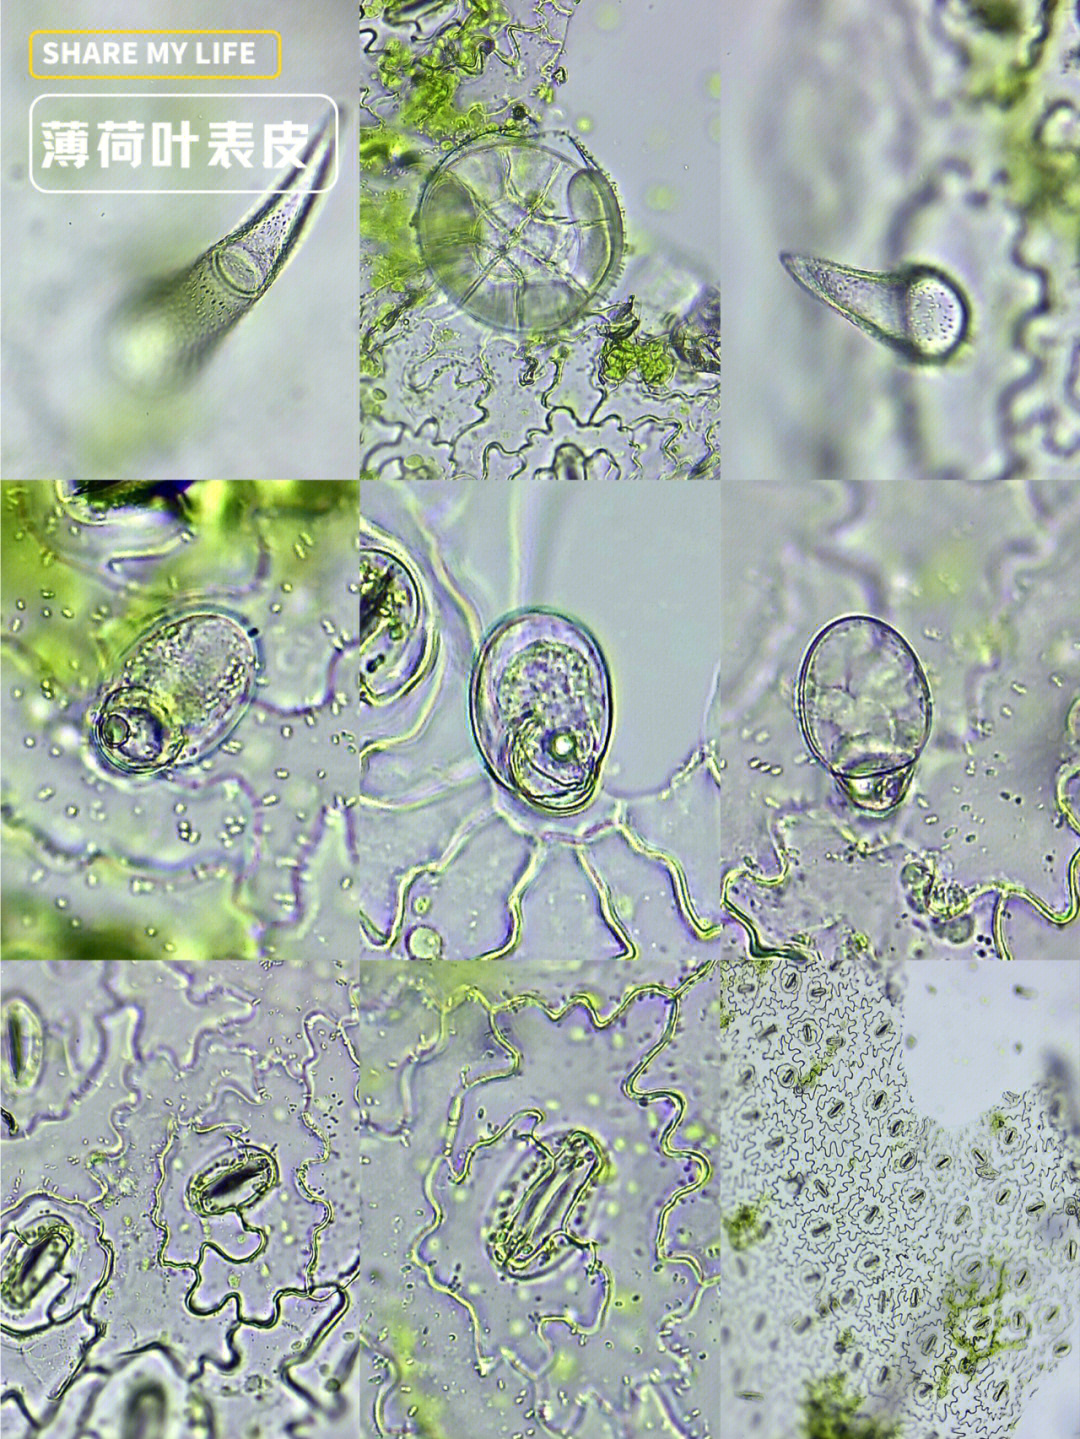 薄荷茎的显微结构图图片